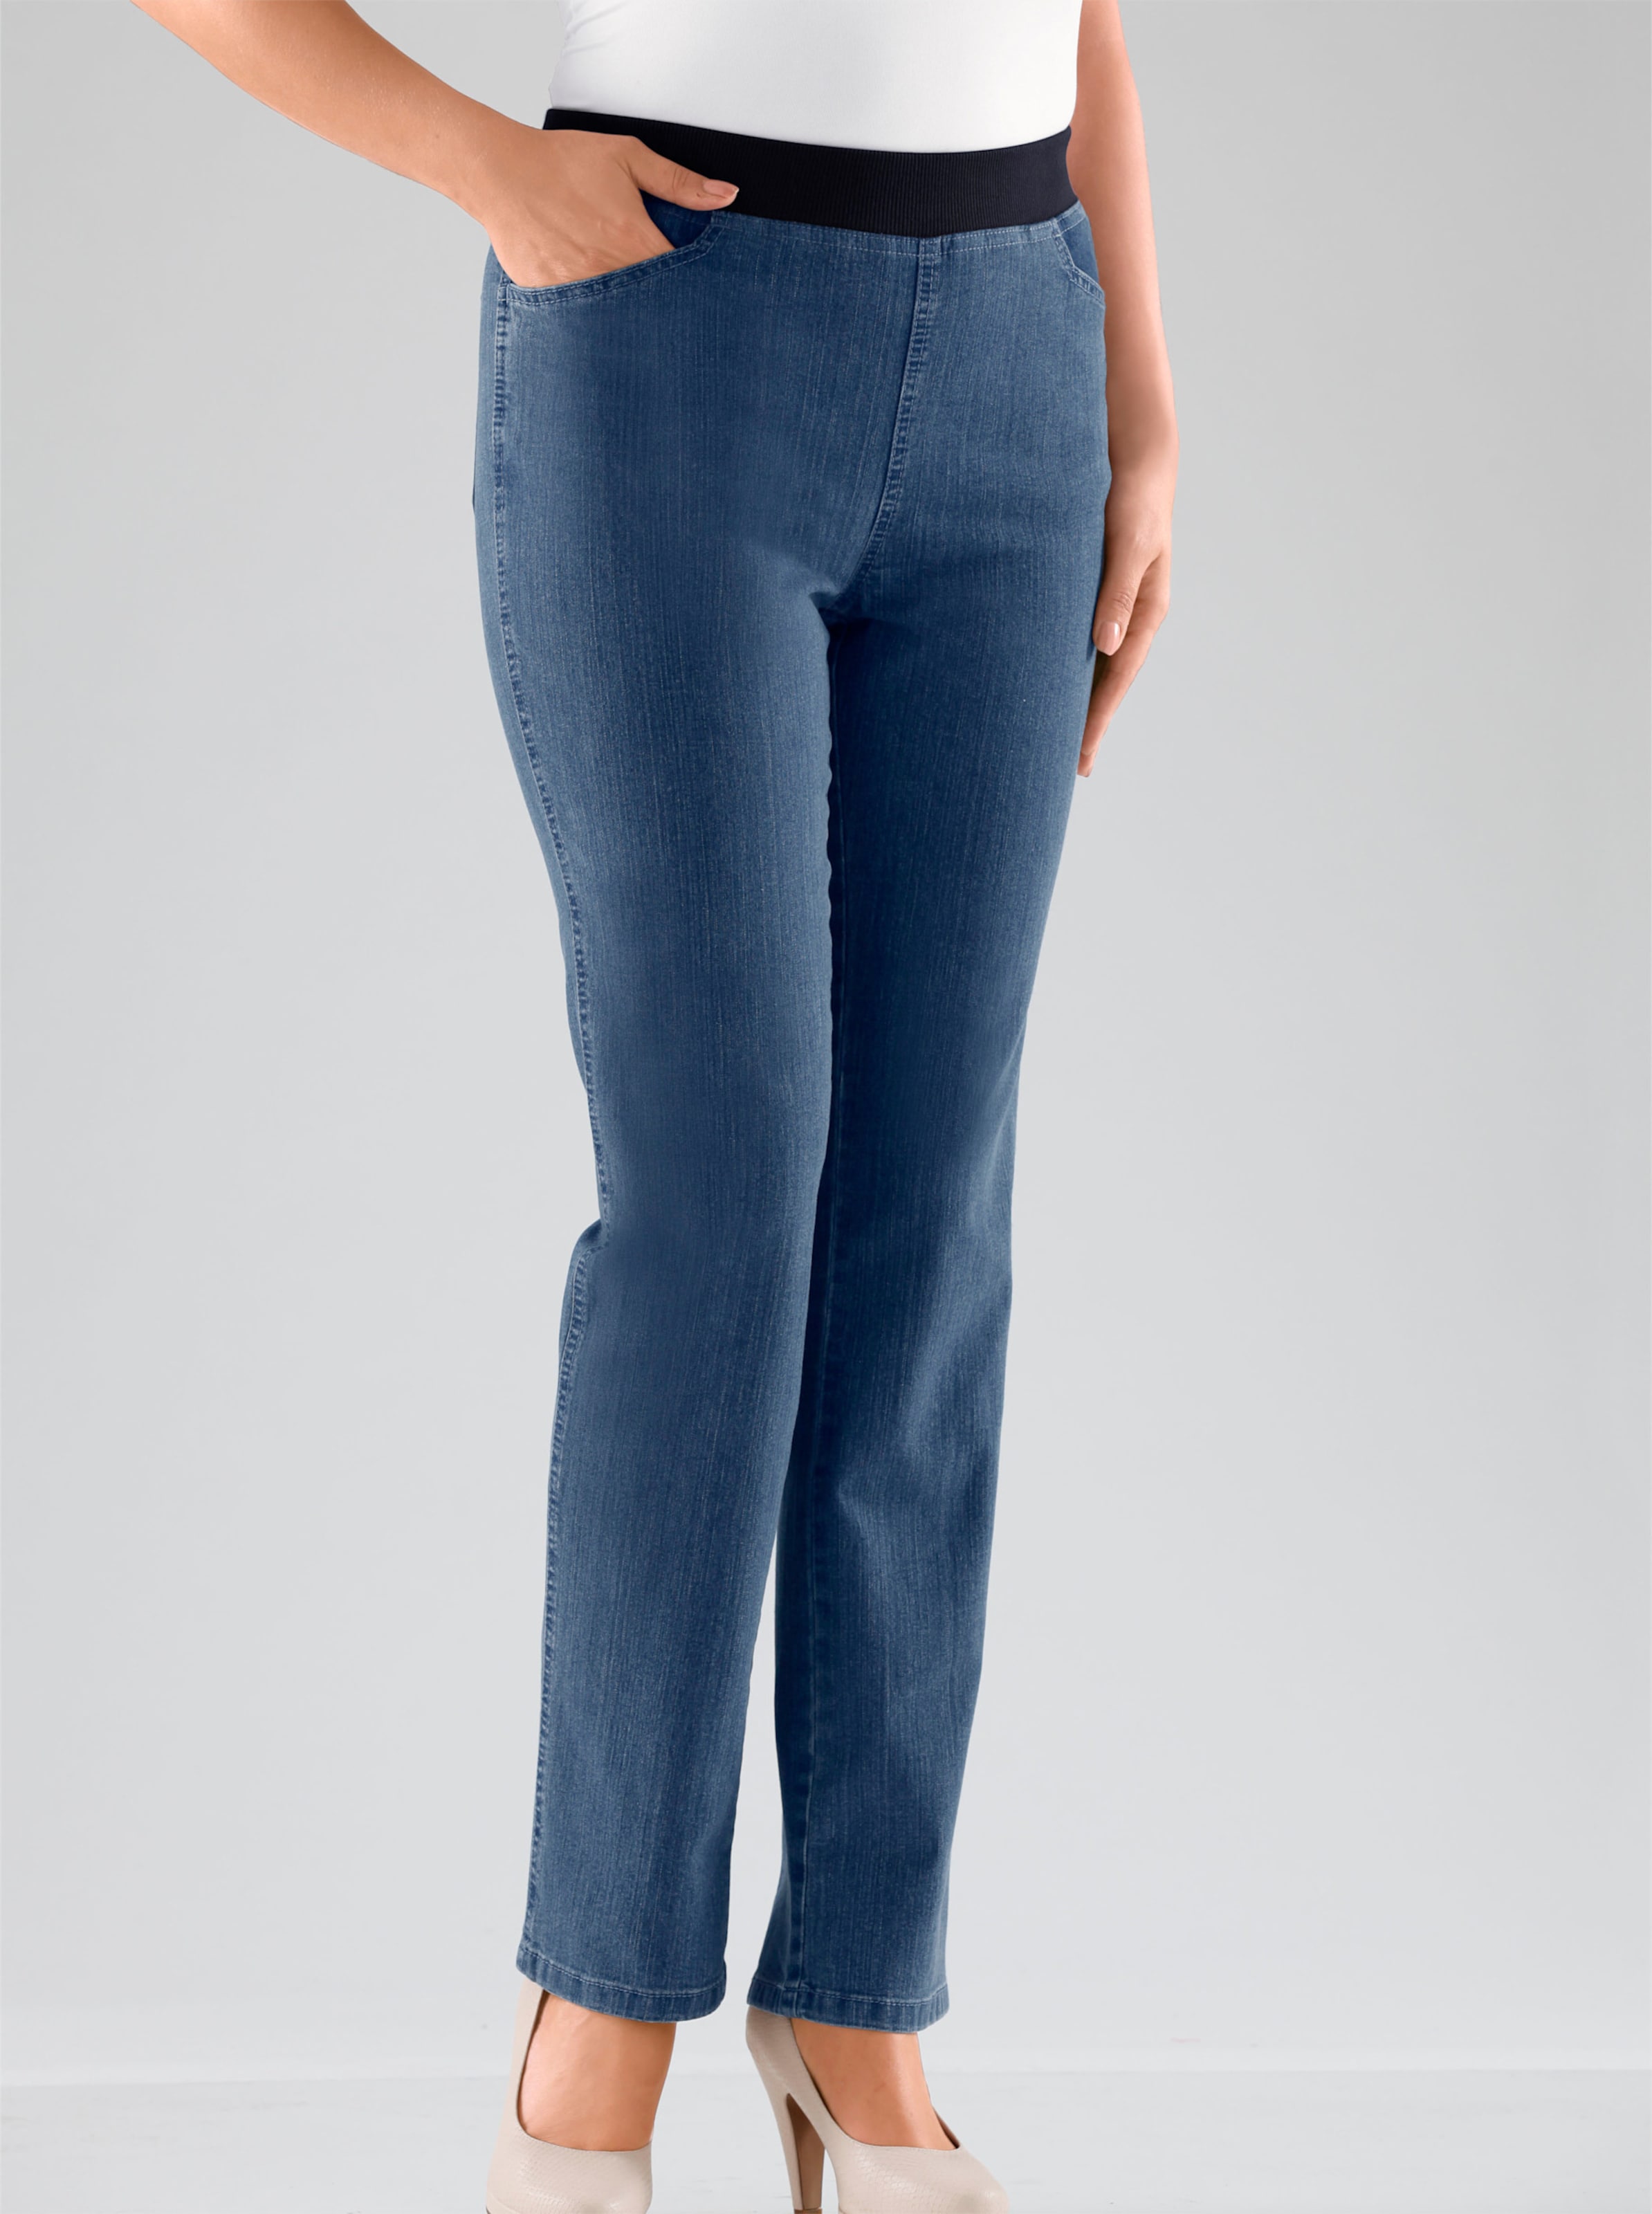 Witt Damen Stretch-Jeans, blue-bleached